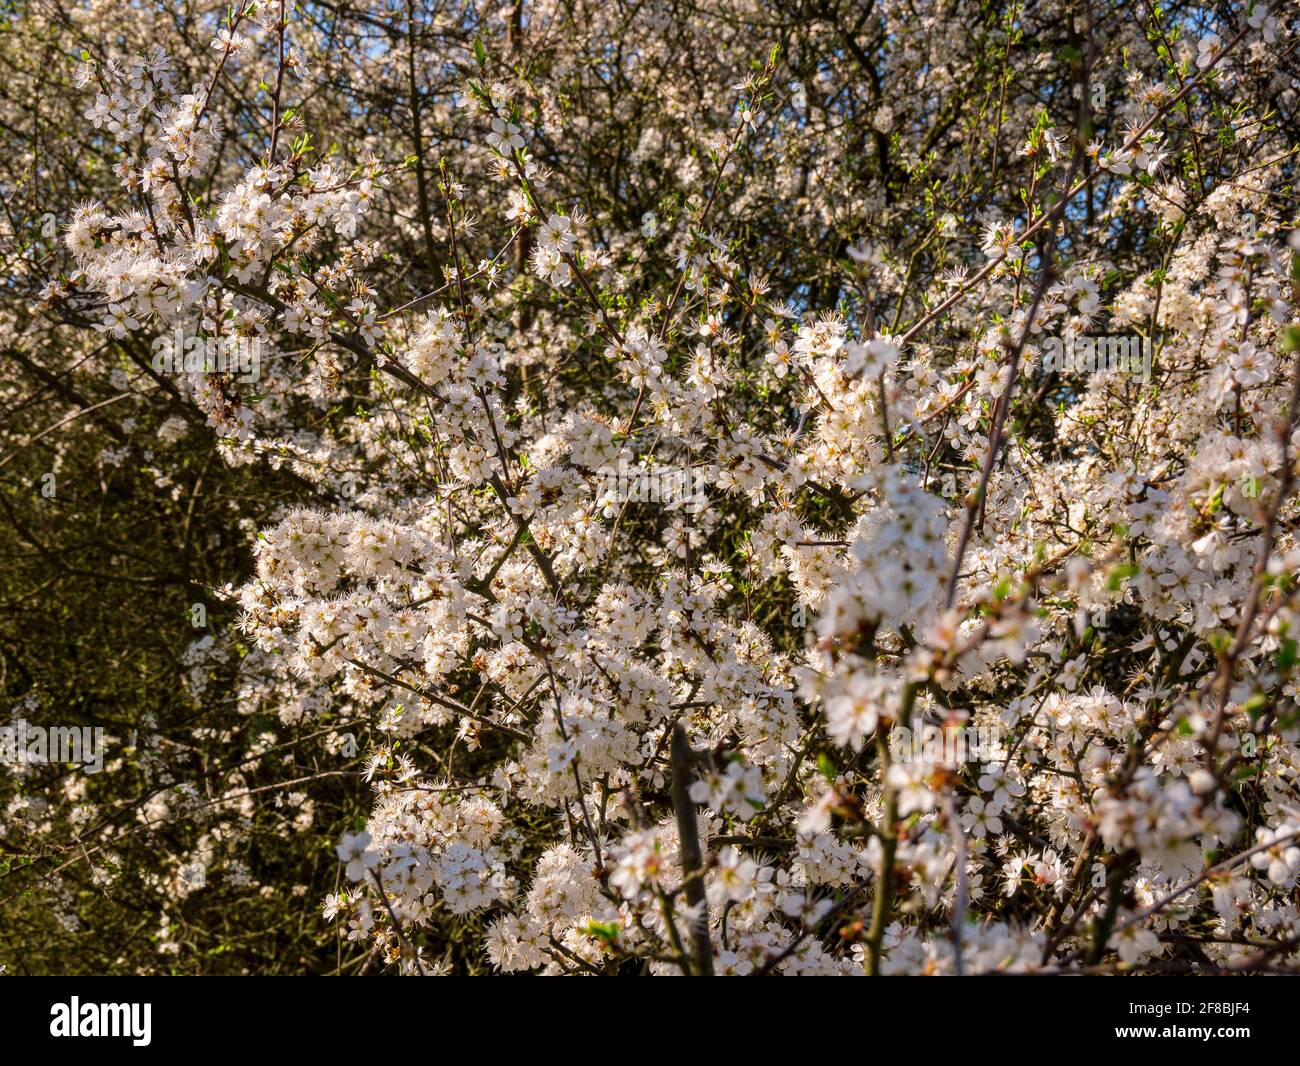 Dense flowering white flowers on young wild cherry (Prunus avium) Stock Photo